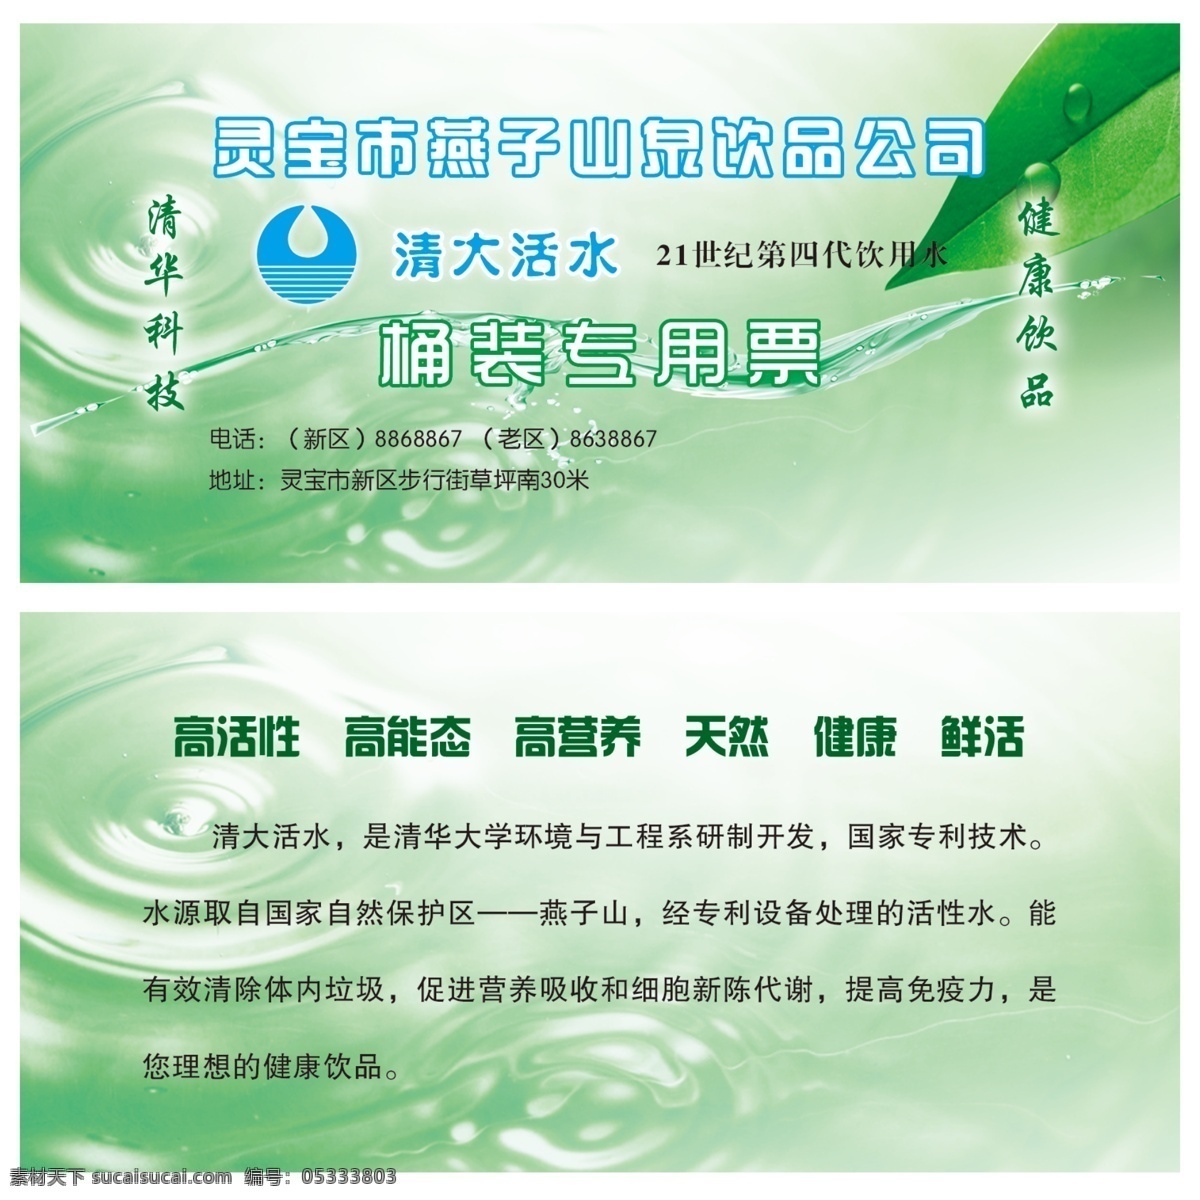 水票 桶装水票 纯净水 叶子水纹 质量安全 水珠 名片卡片 广告设计模板 源文件